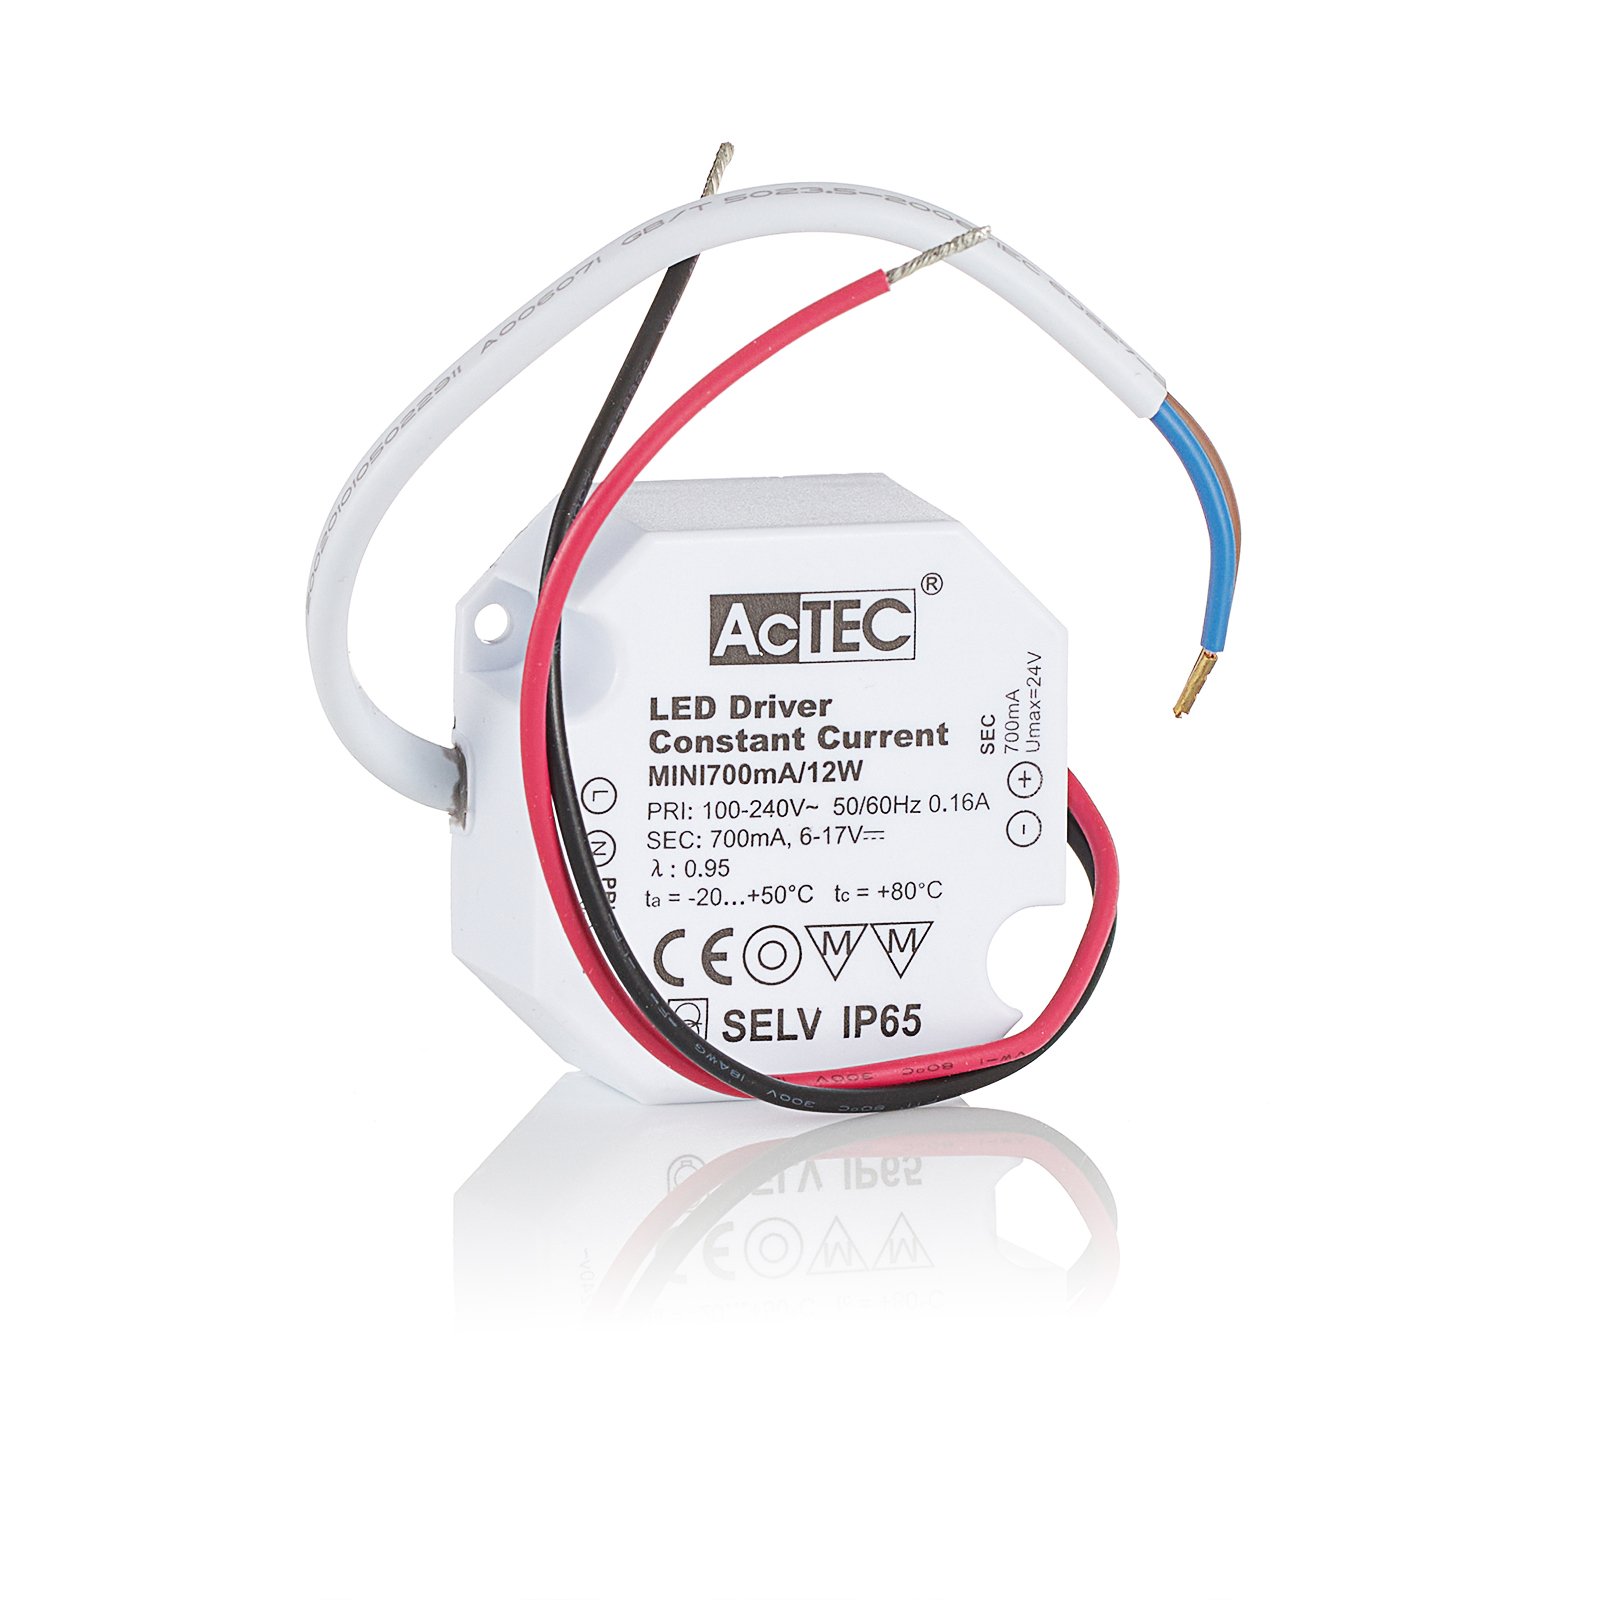 AcTEC Mini LED vezérlő CC 700mA, 12W, IP65